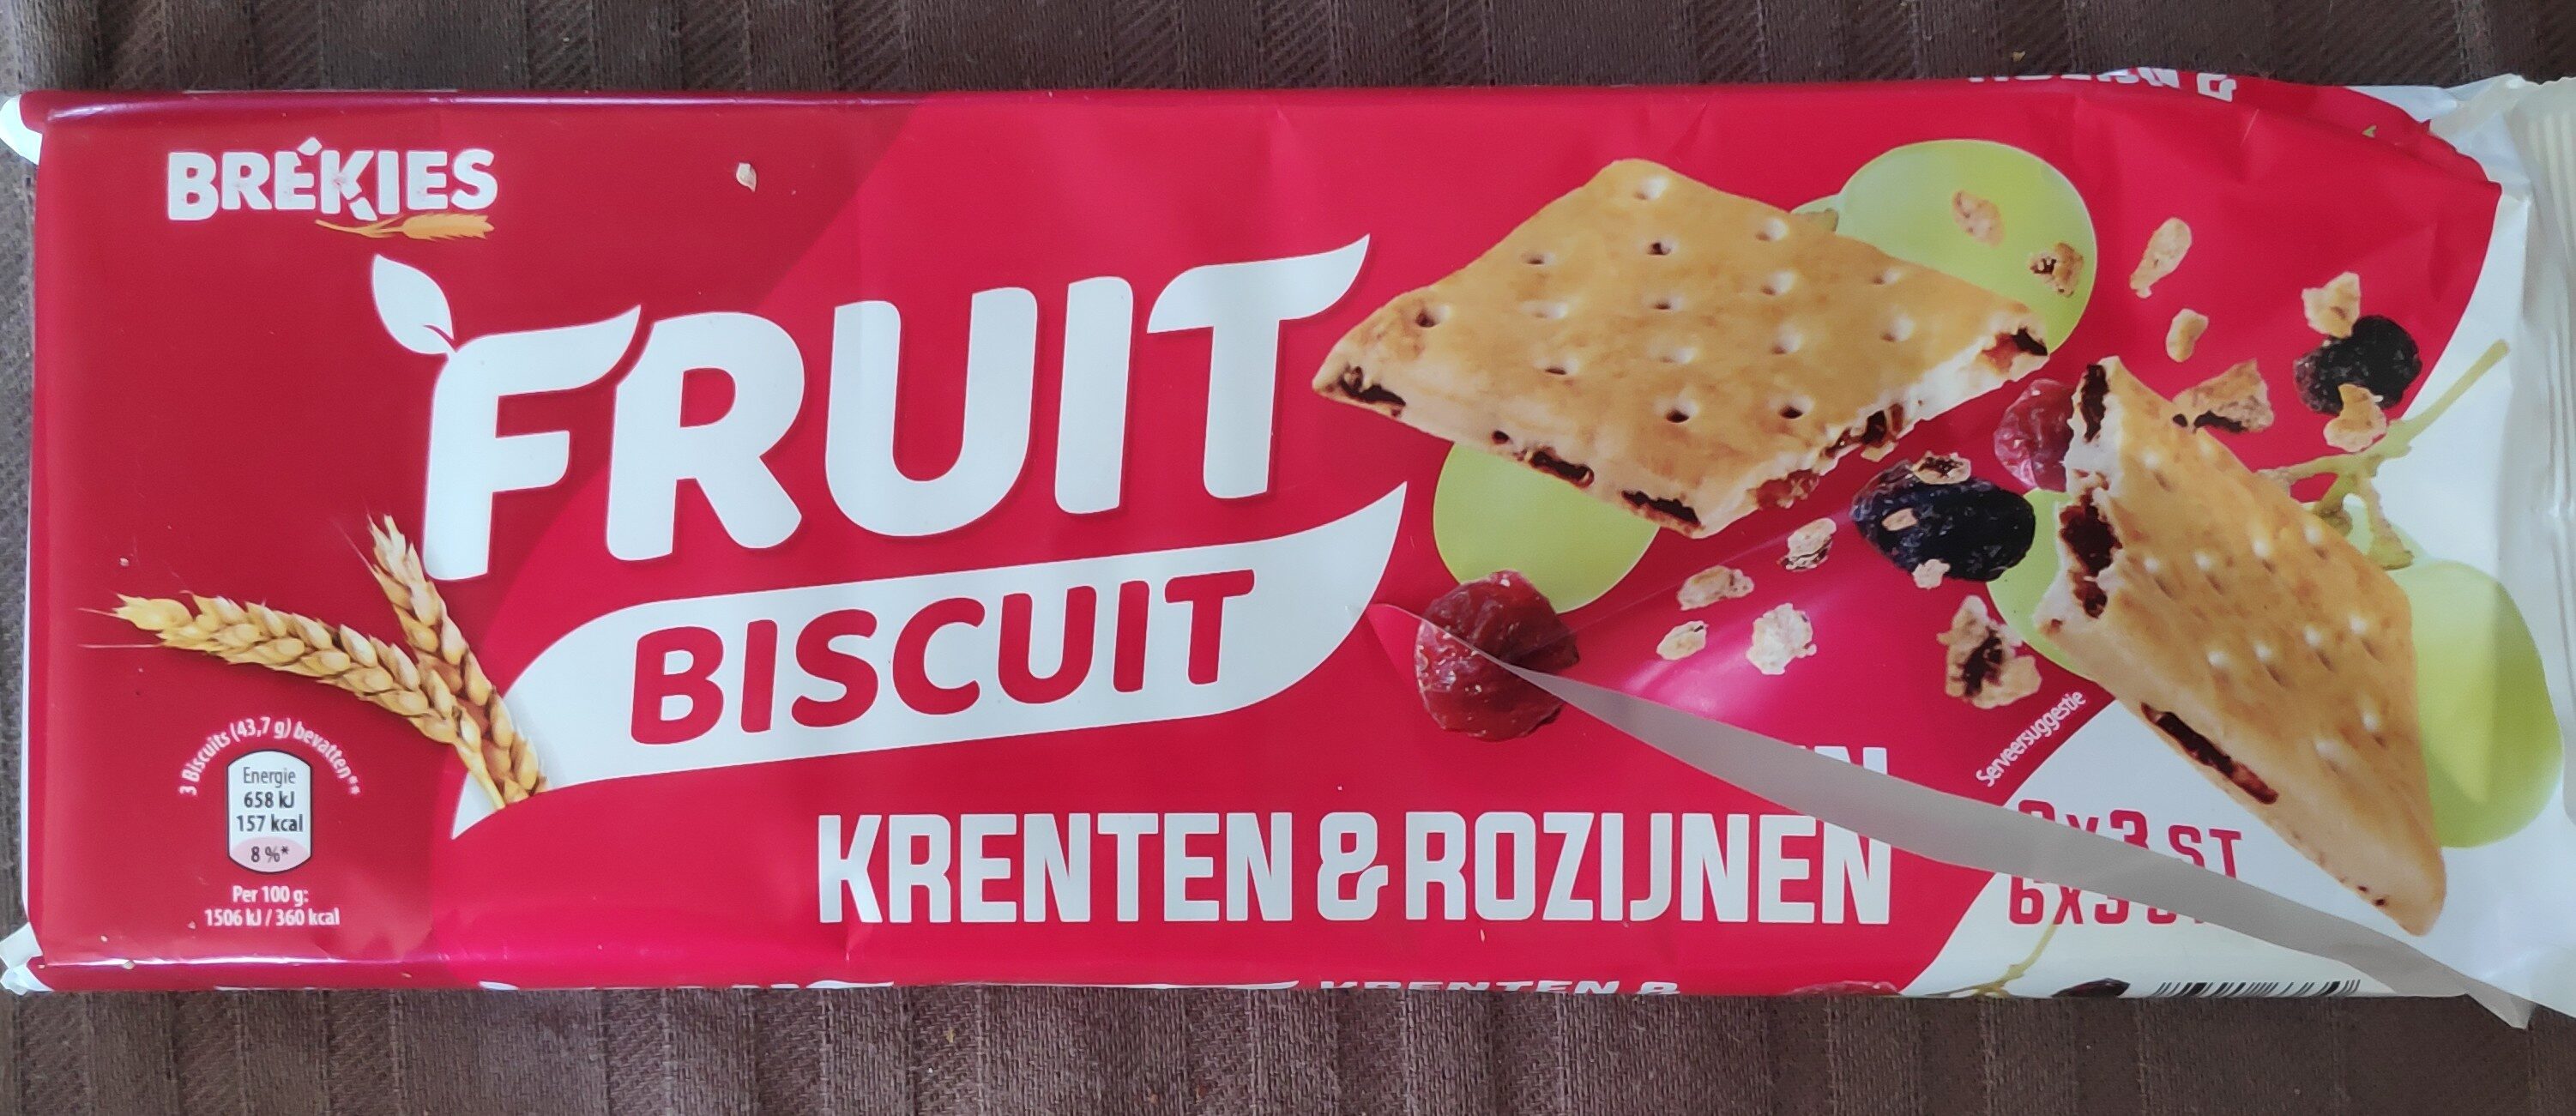 Fruit Biscuit - Krenten & rozijnen - Product